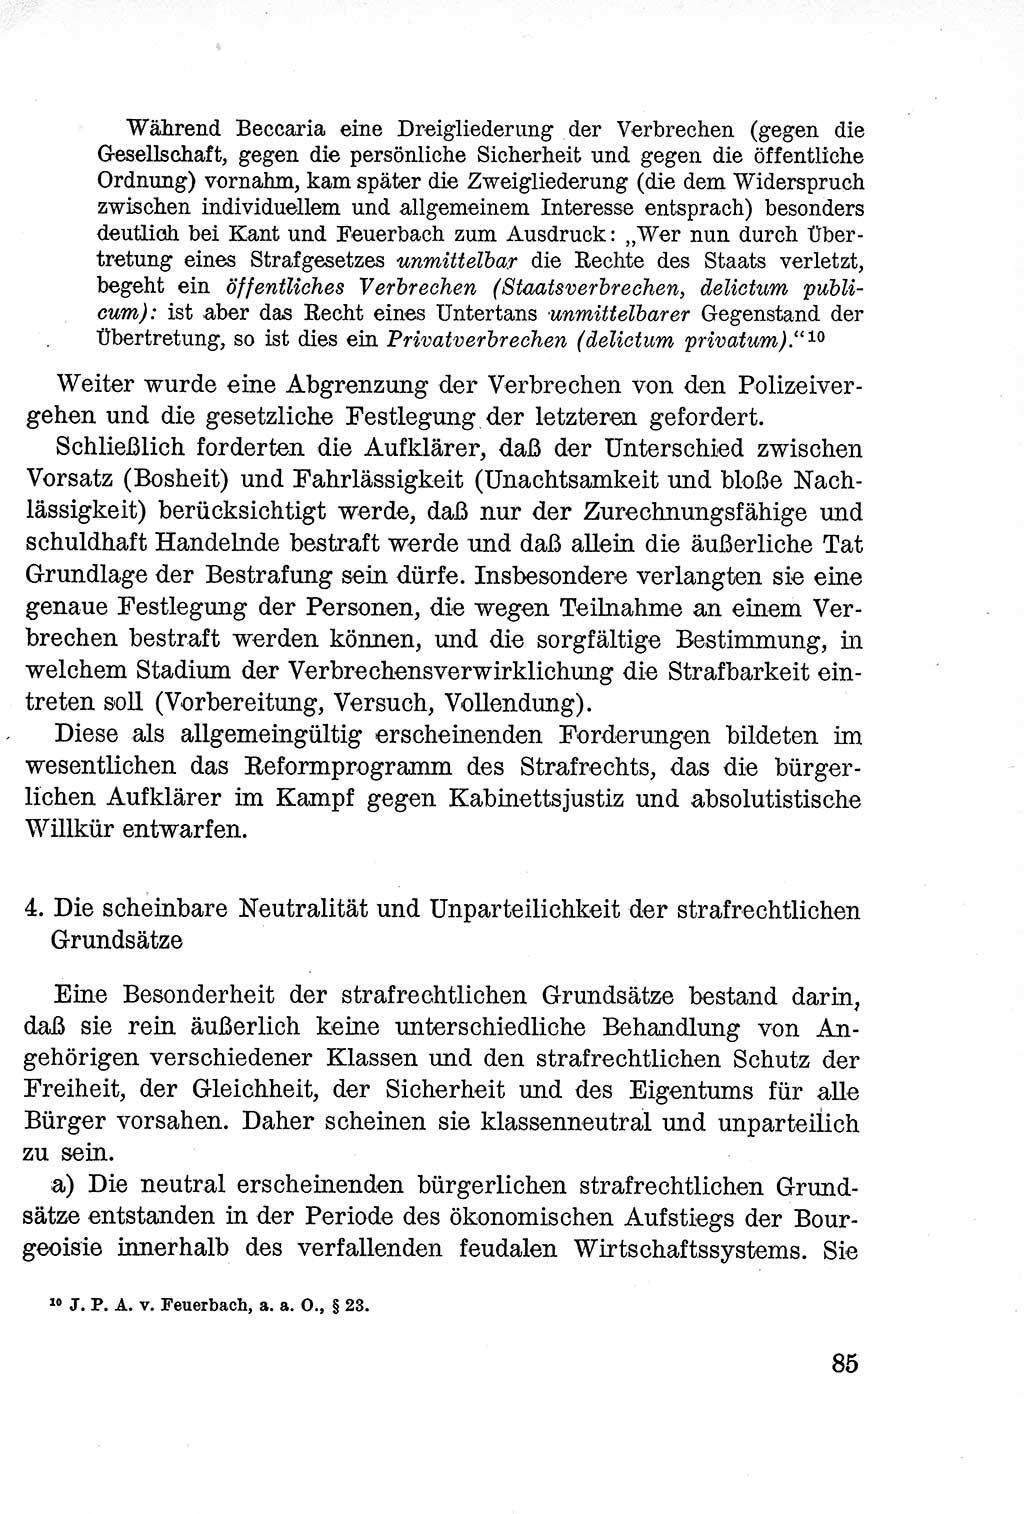 Lehrbuch des Strafrechts der Deutschen Demokratischen Republik (DDR), Allgemeiner Teil 1957, Seite 85 (Lb. Strafr. DDR AT 1957, S. 85)